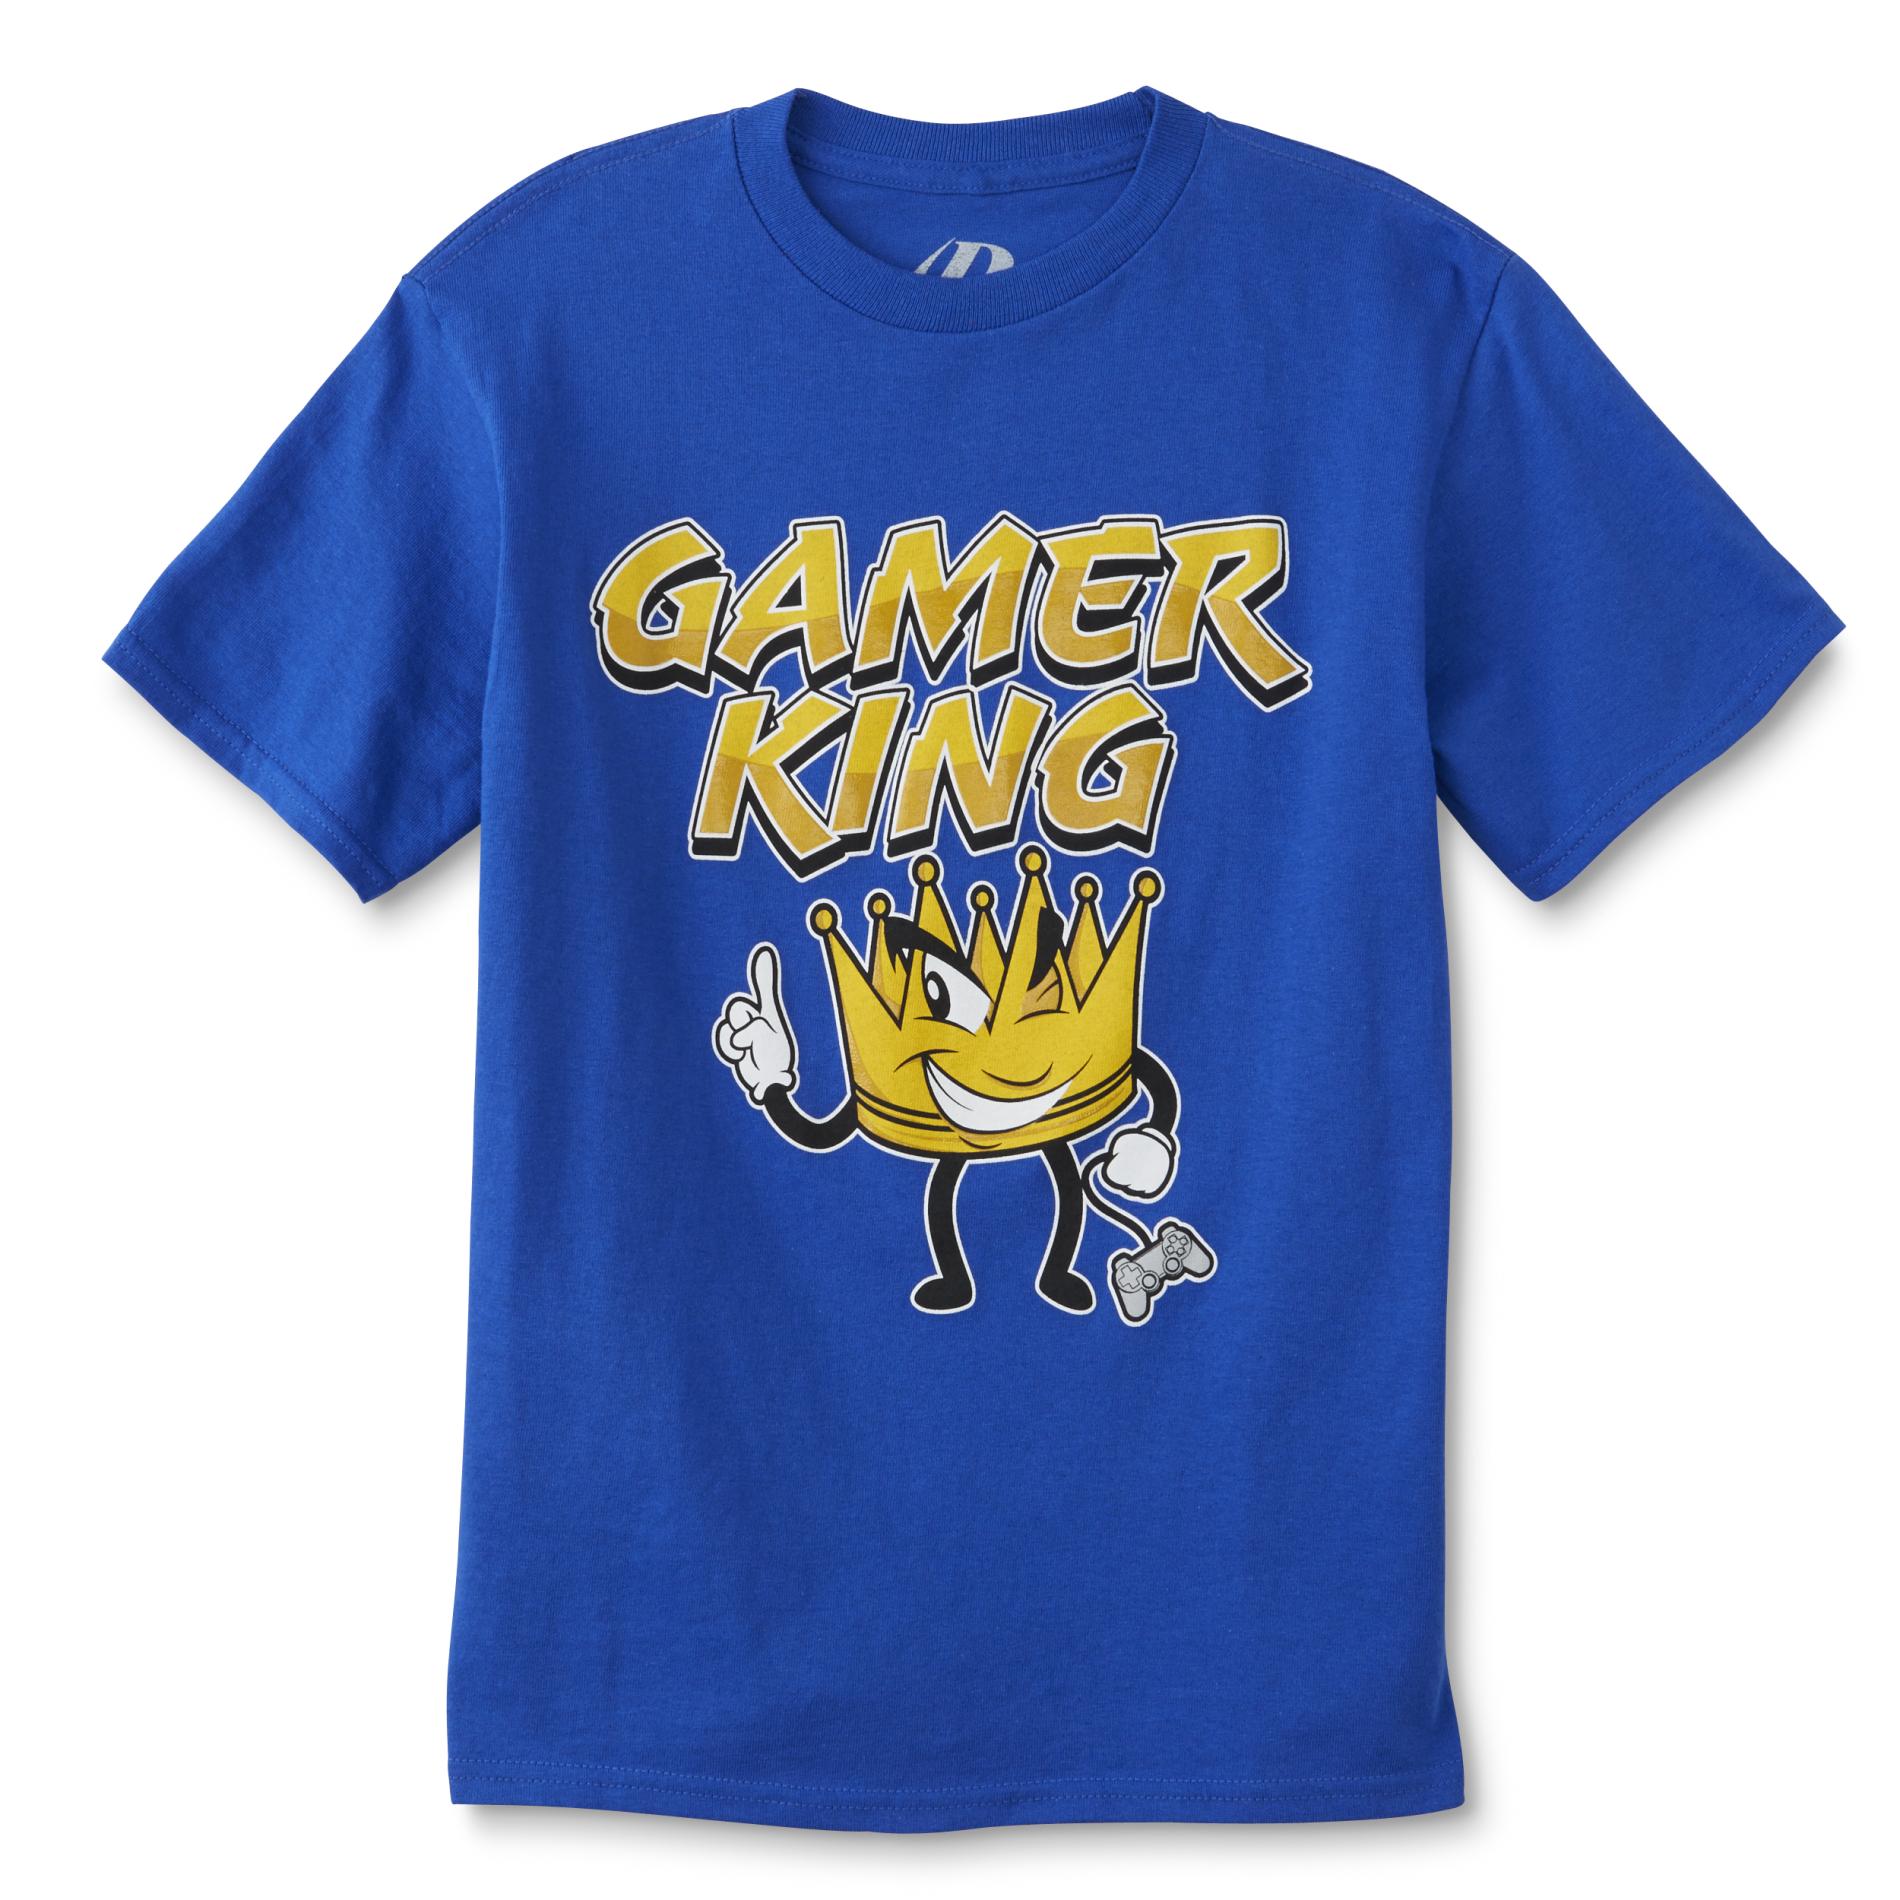 TRIMFIT Boy's Graphic T-Shirt - Gamer King